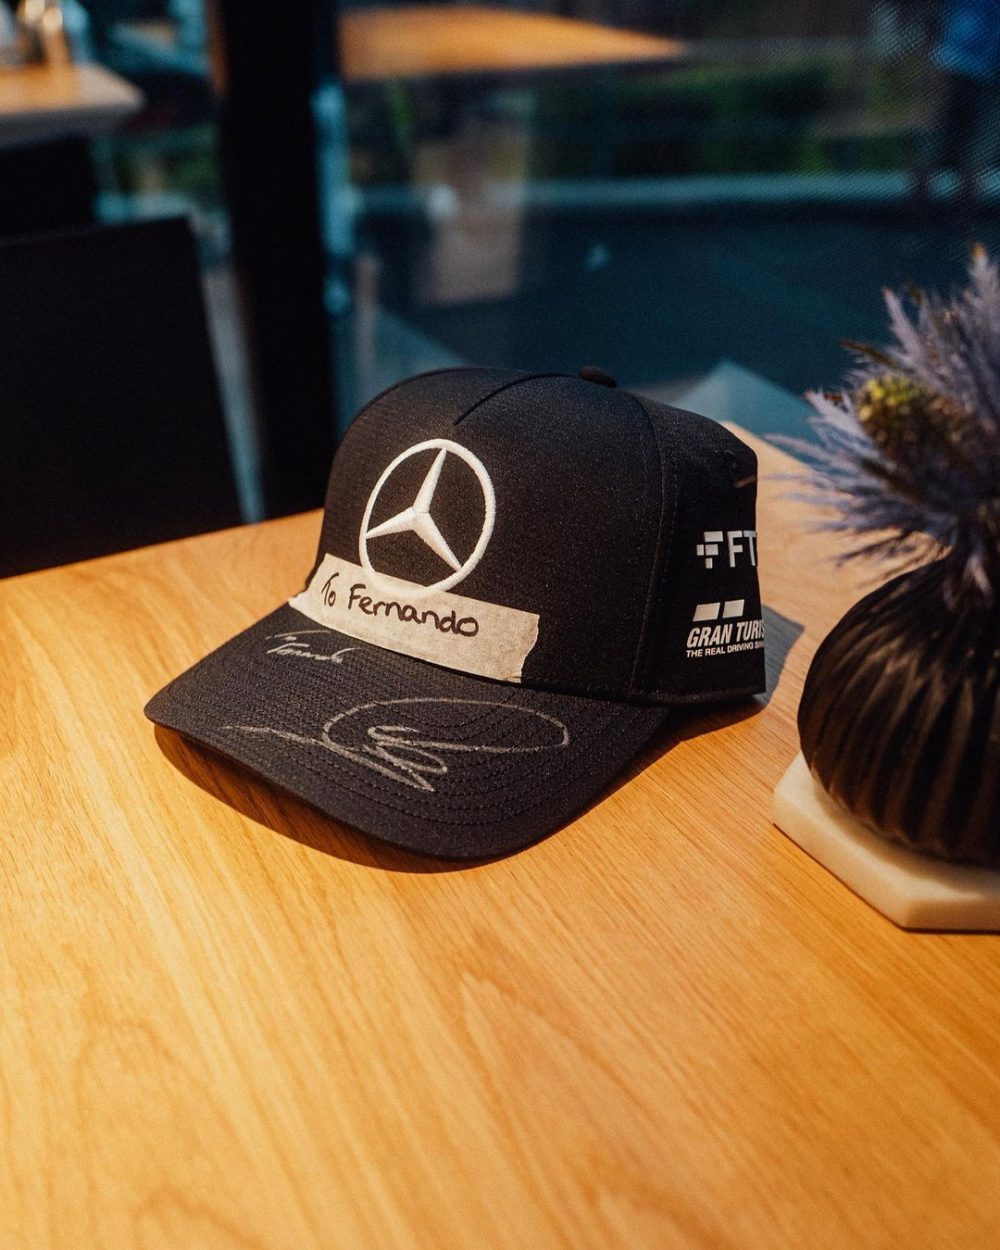 Hamilton publicó un post en Instagram después de que Alonso le llamara "menudo idiota", y añadió la foto de una gorra firmada para Fernando Alonso